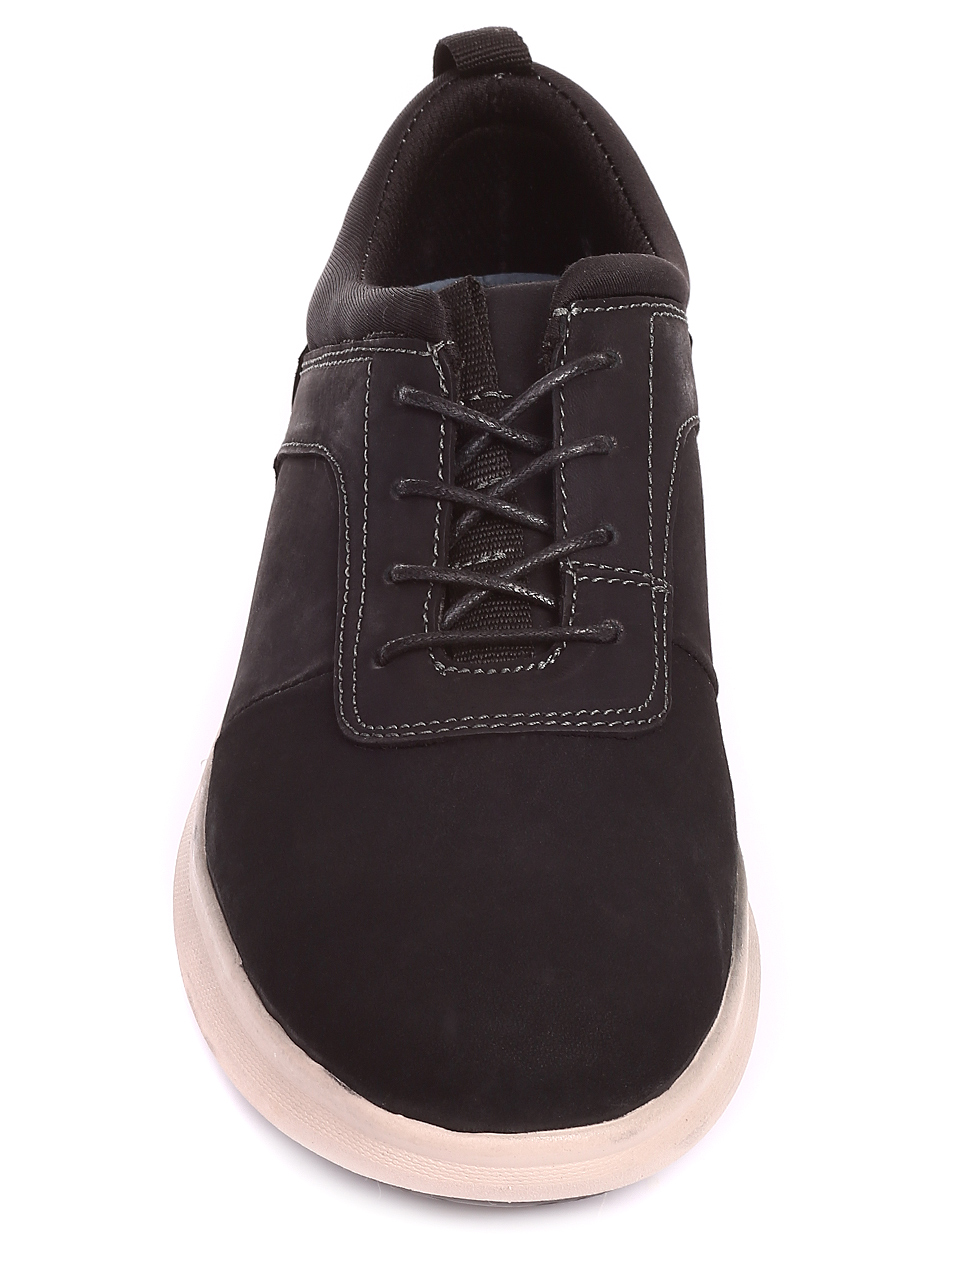 Ежедневни мъжки обувки от естествен набук 7X-20249 black